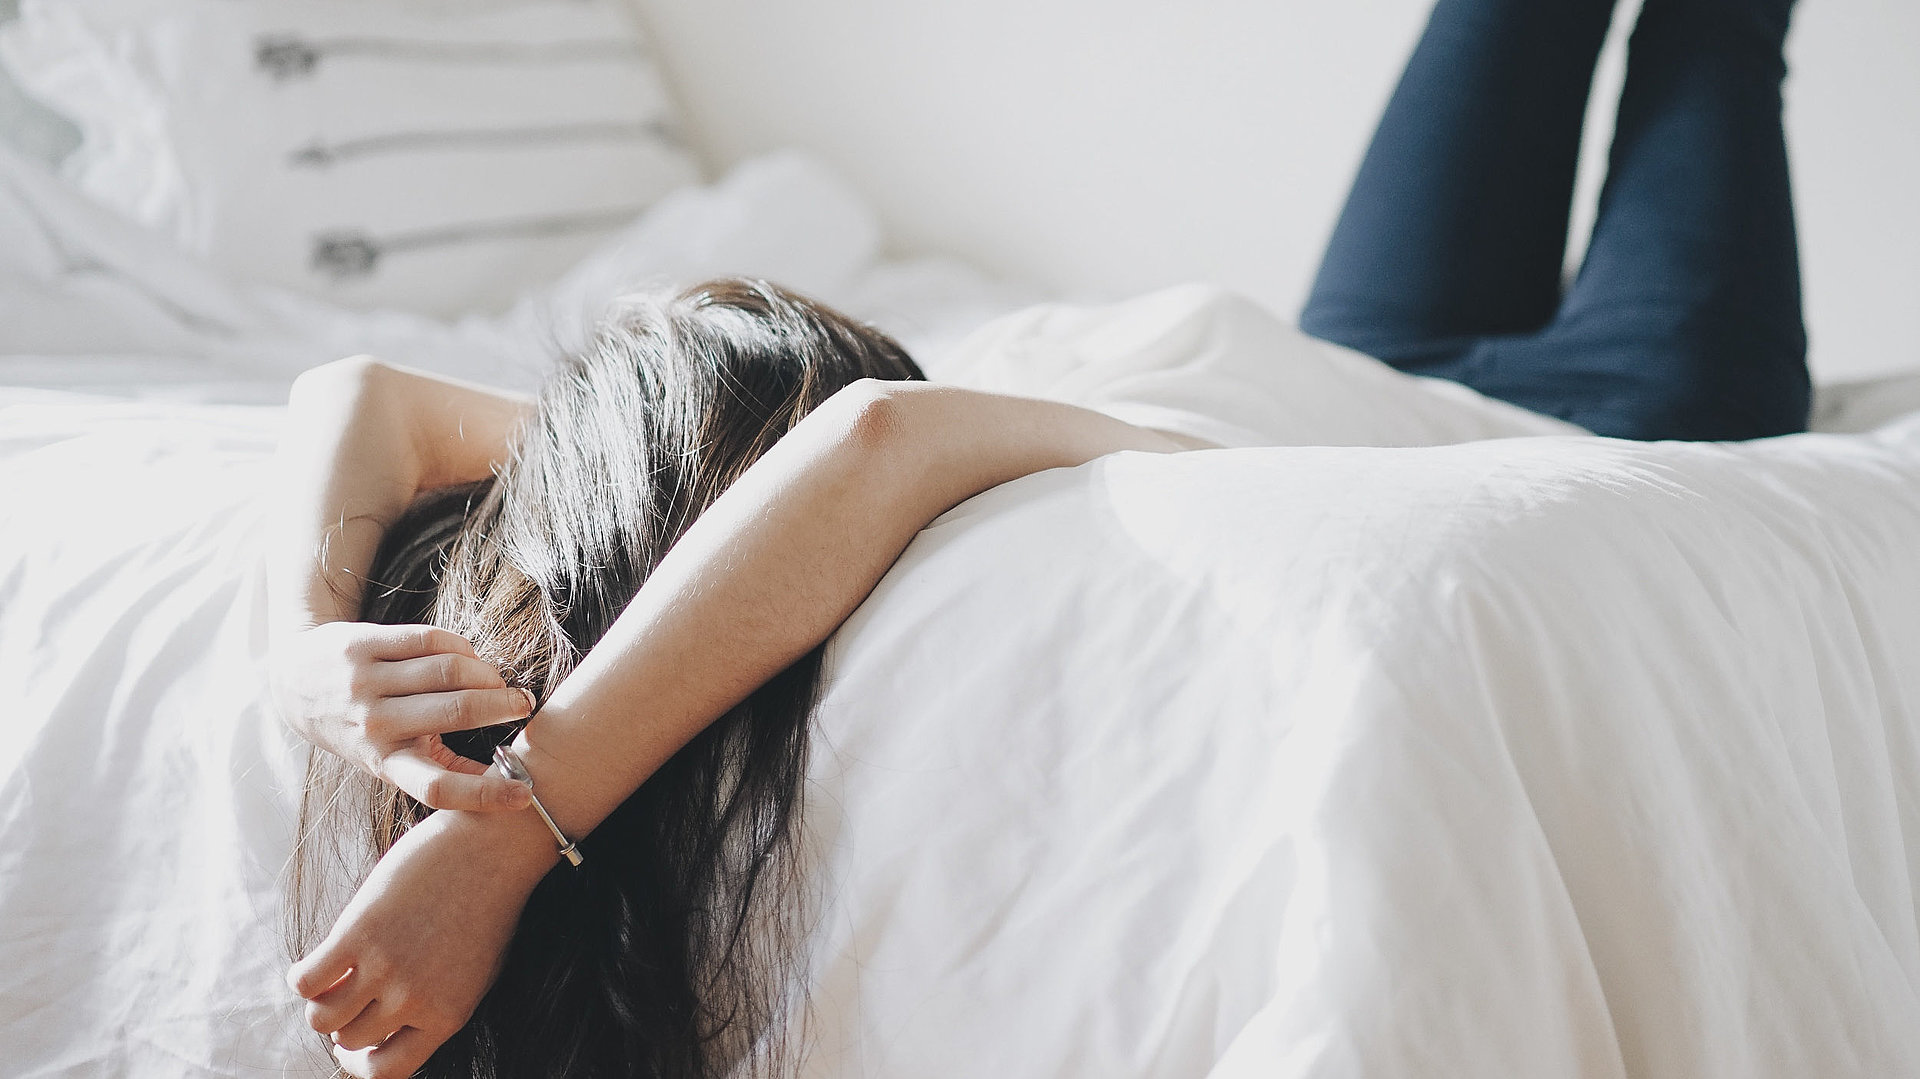 Pauschalen für eine Woche in Franken - junge Frau liegt mit dem Rücken auf dem Bett und schaut zur Decke